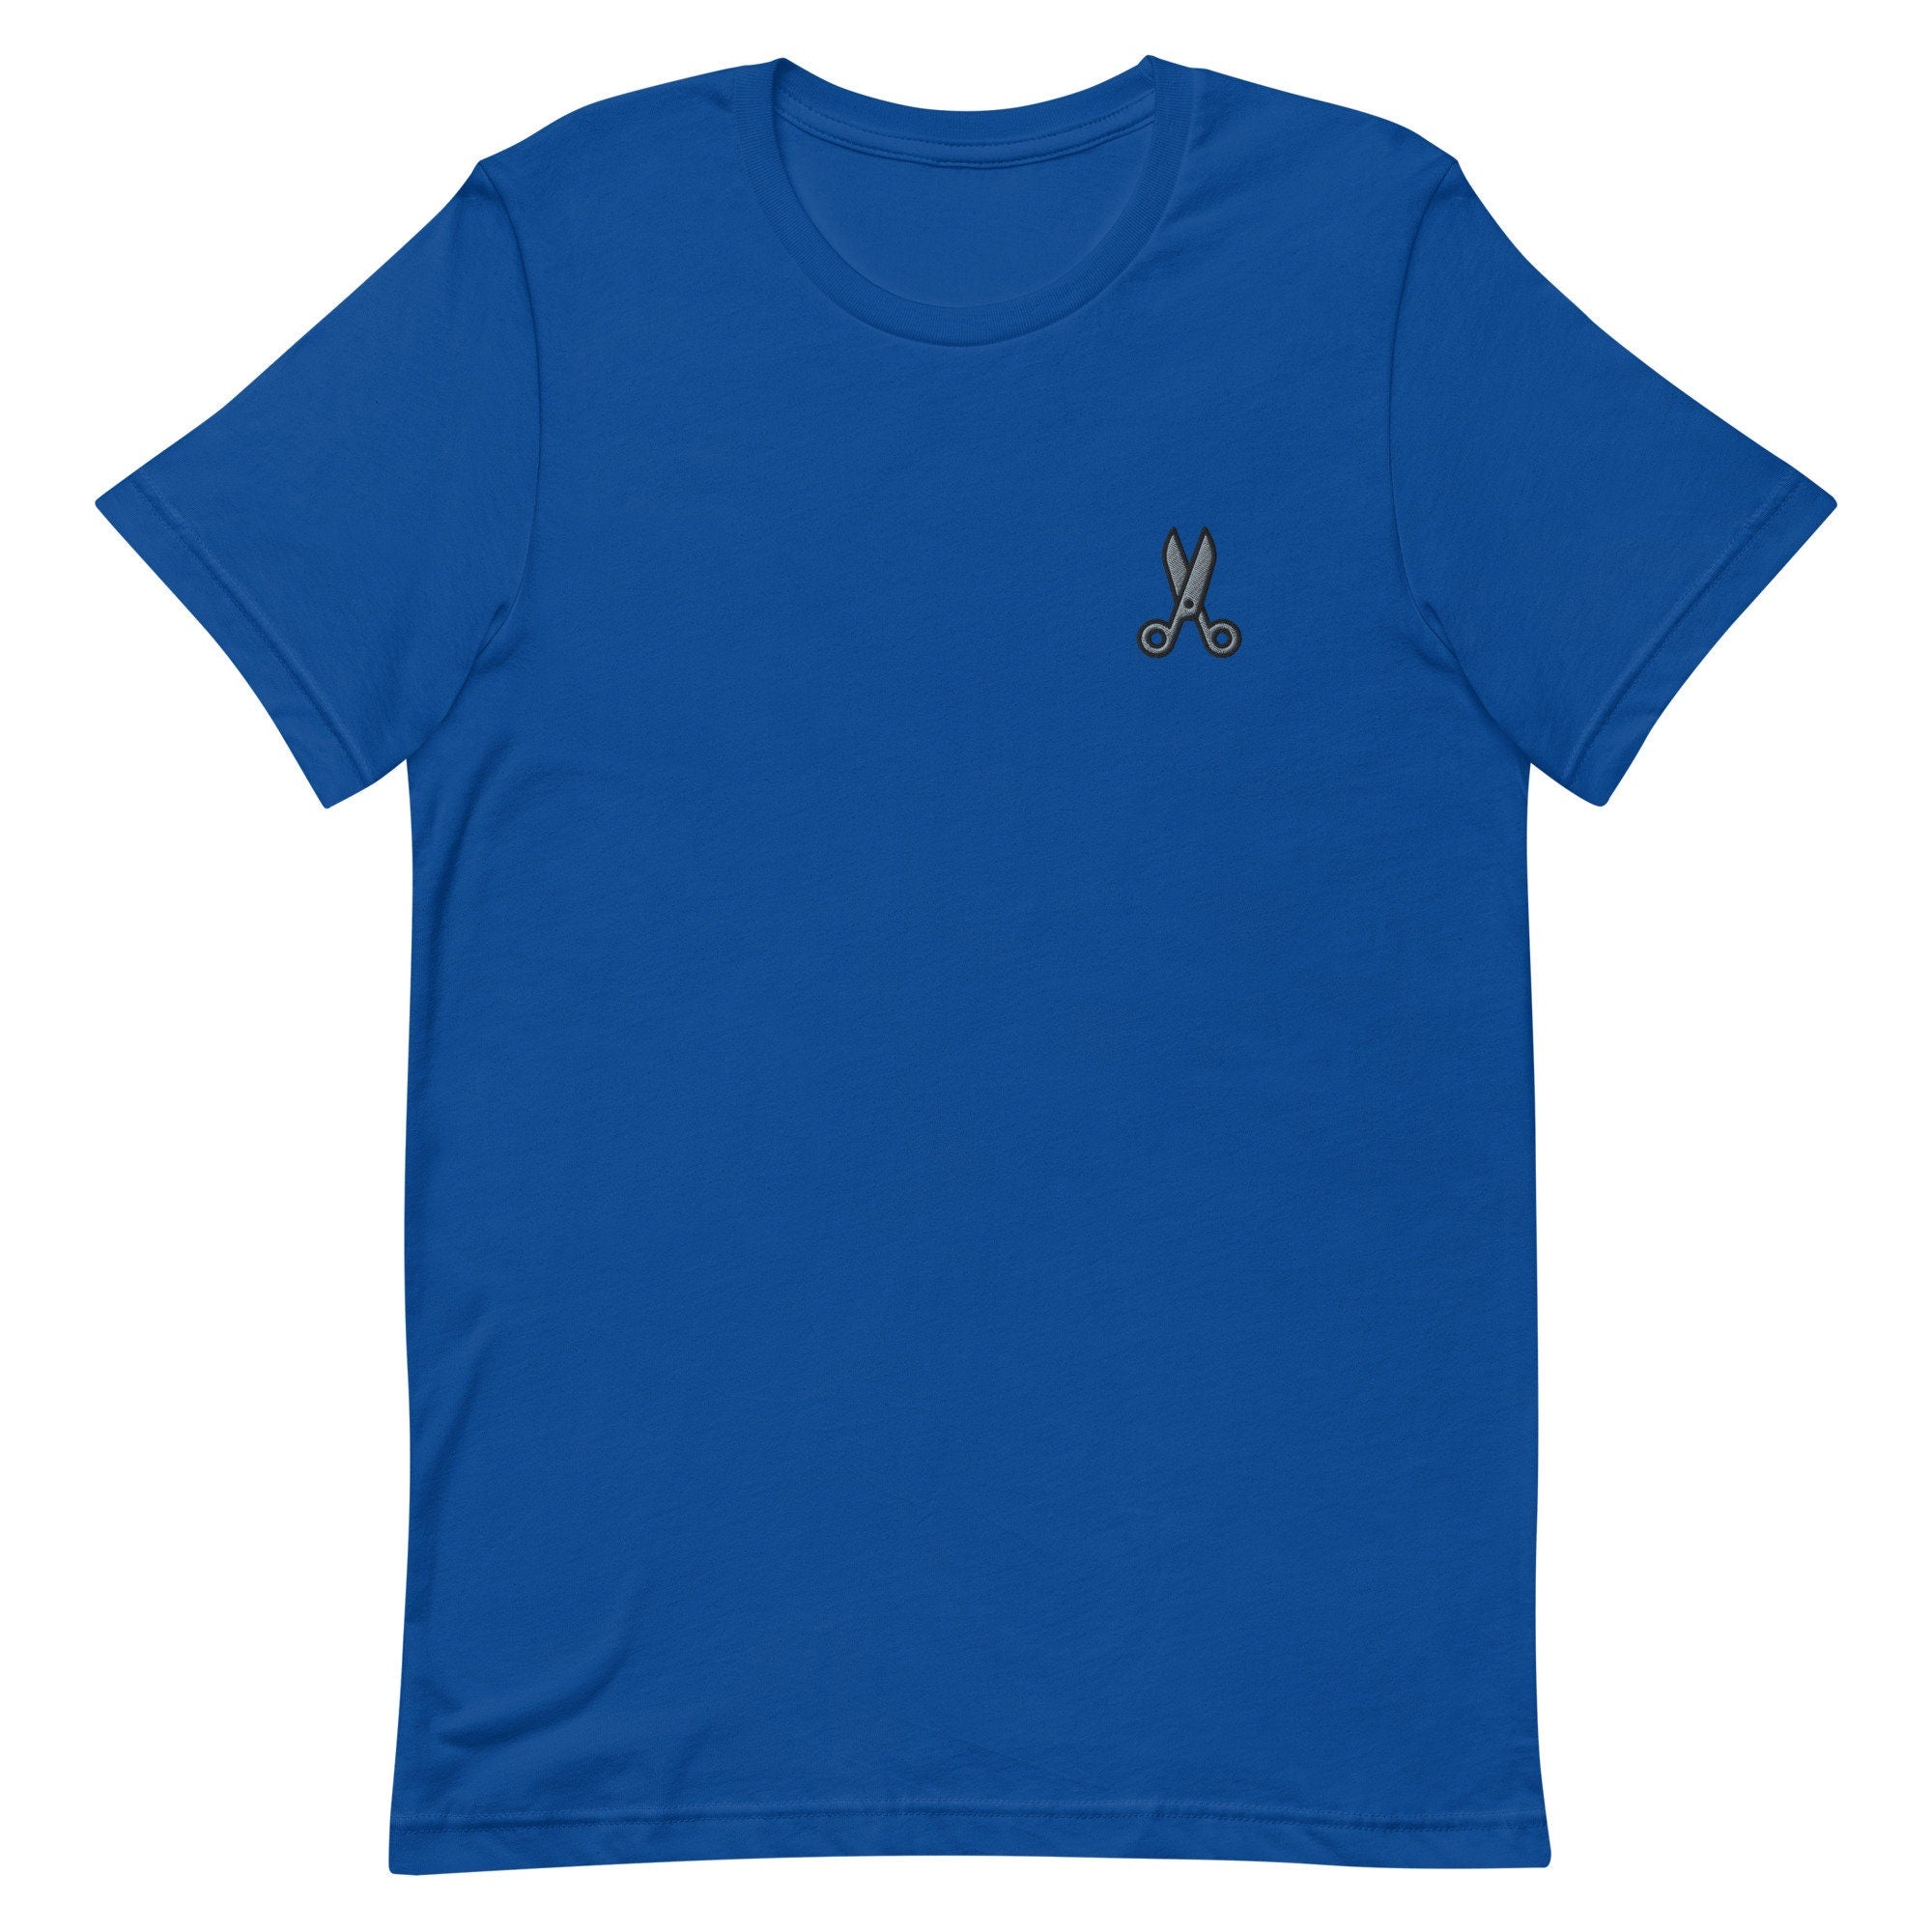 Scissors Premium Men's T-Shirt, Embroidered Men's T-Shirt Gift for Boyfriend, Men's Short Sleeve Shirt - Multiple Colors